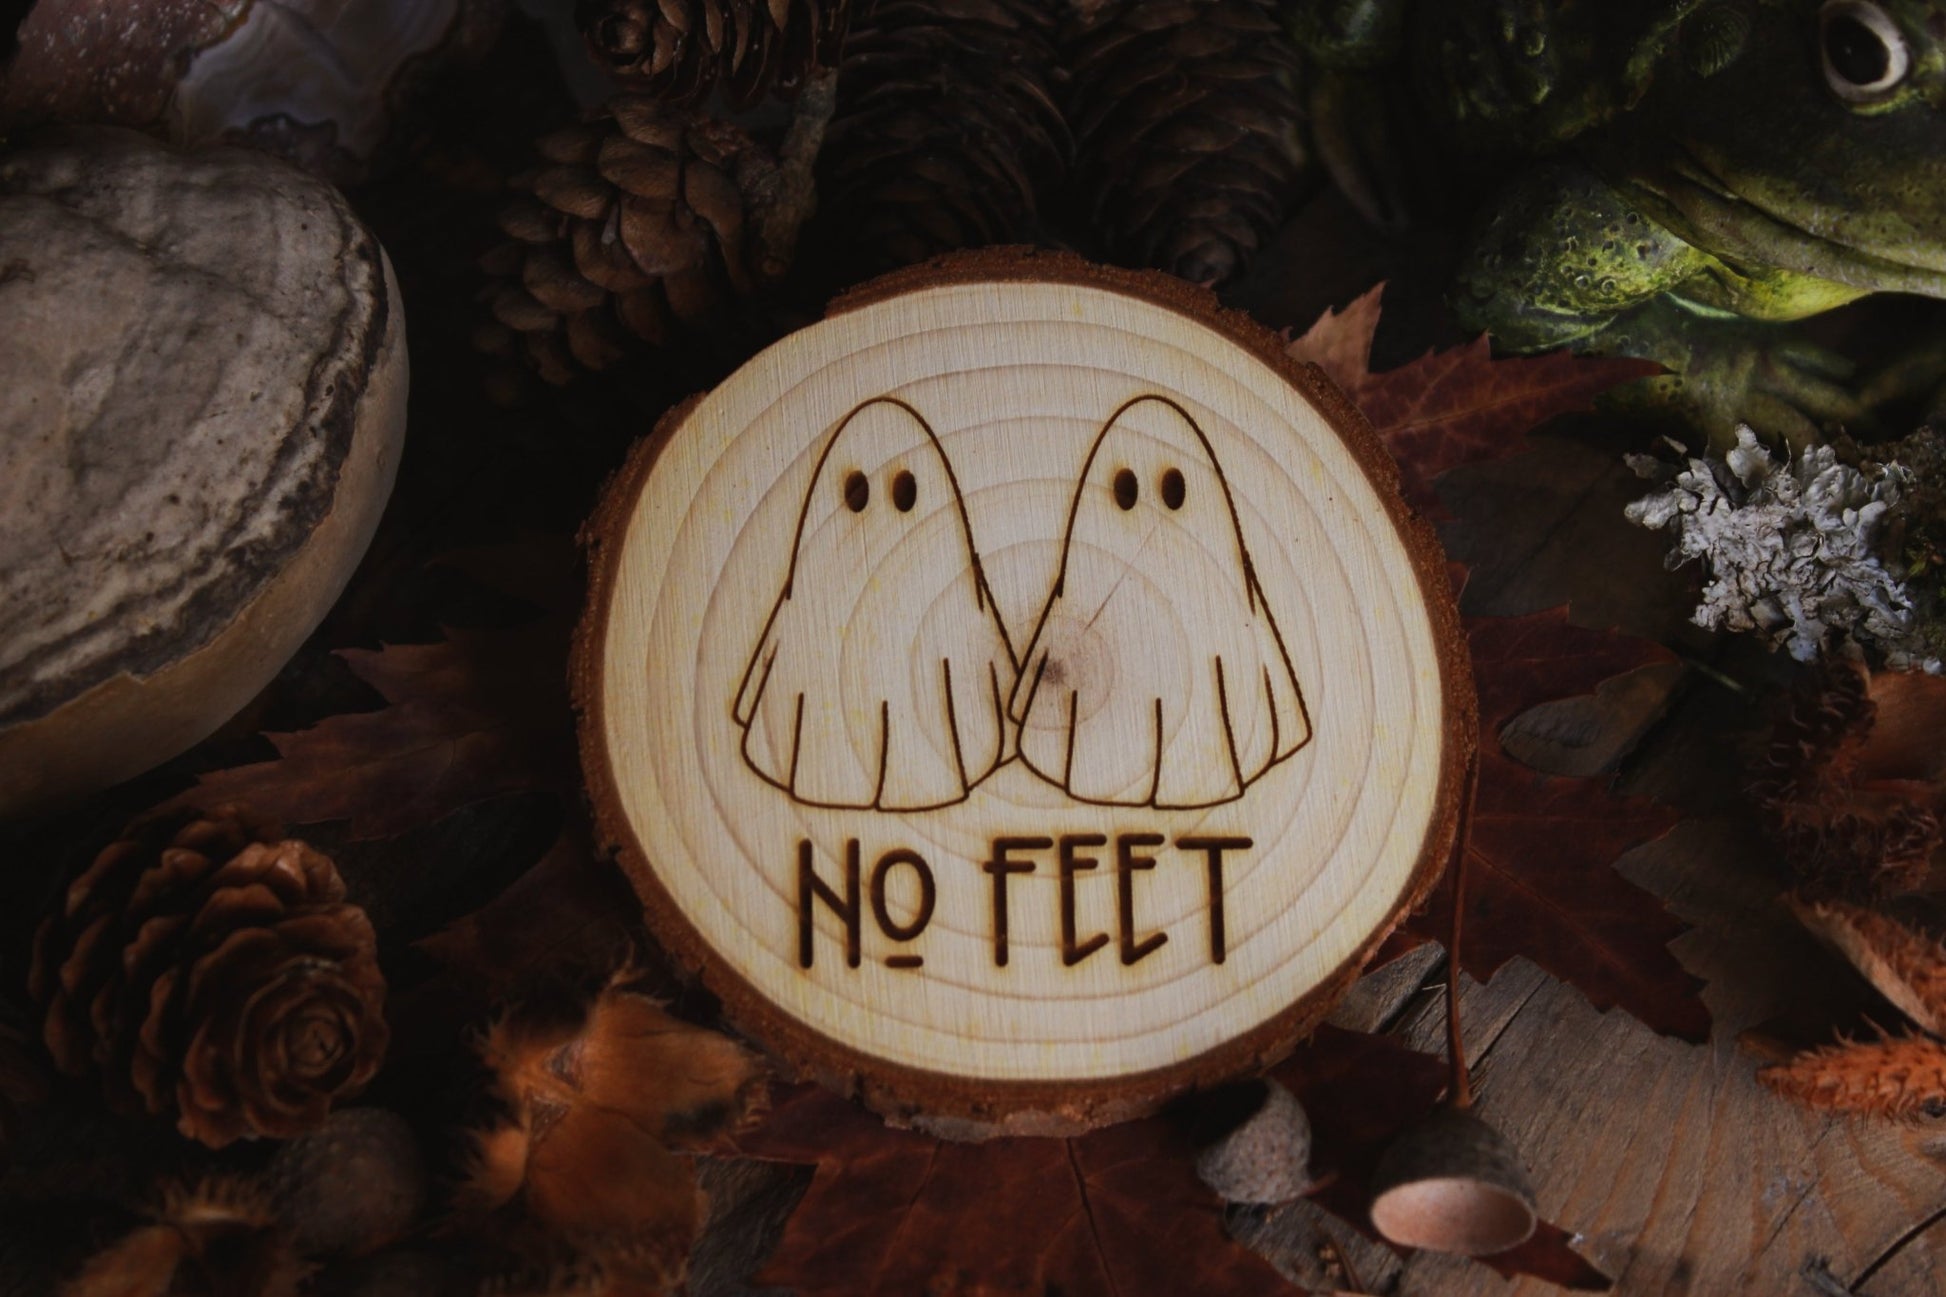  Wandbild aus Holz "No Feet" - Handgefertigtes Holzstück mit einer eingravierten Illustration von zwei Geistern und dem Text ‘NO FEET’, umgeben von natürlichen Elementen wie Tannenzapfen, Steinen und einer Froschstatue.